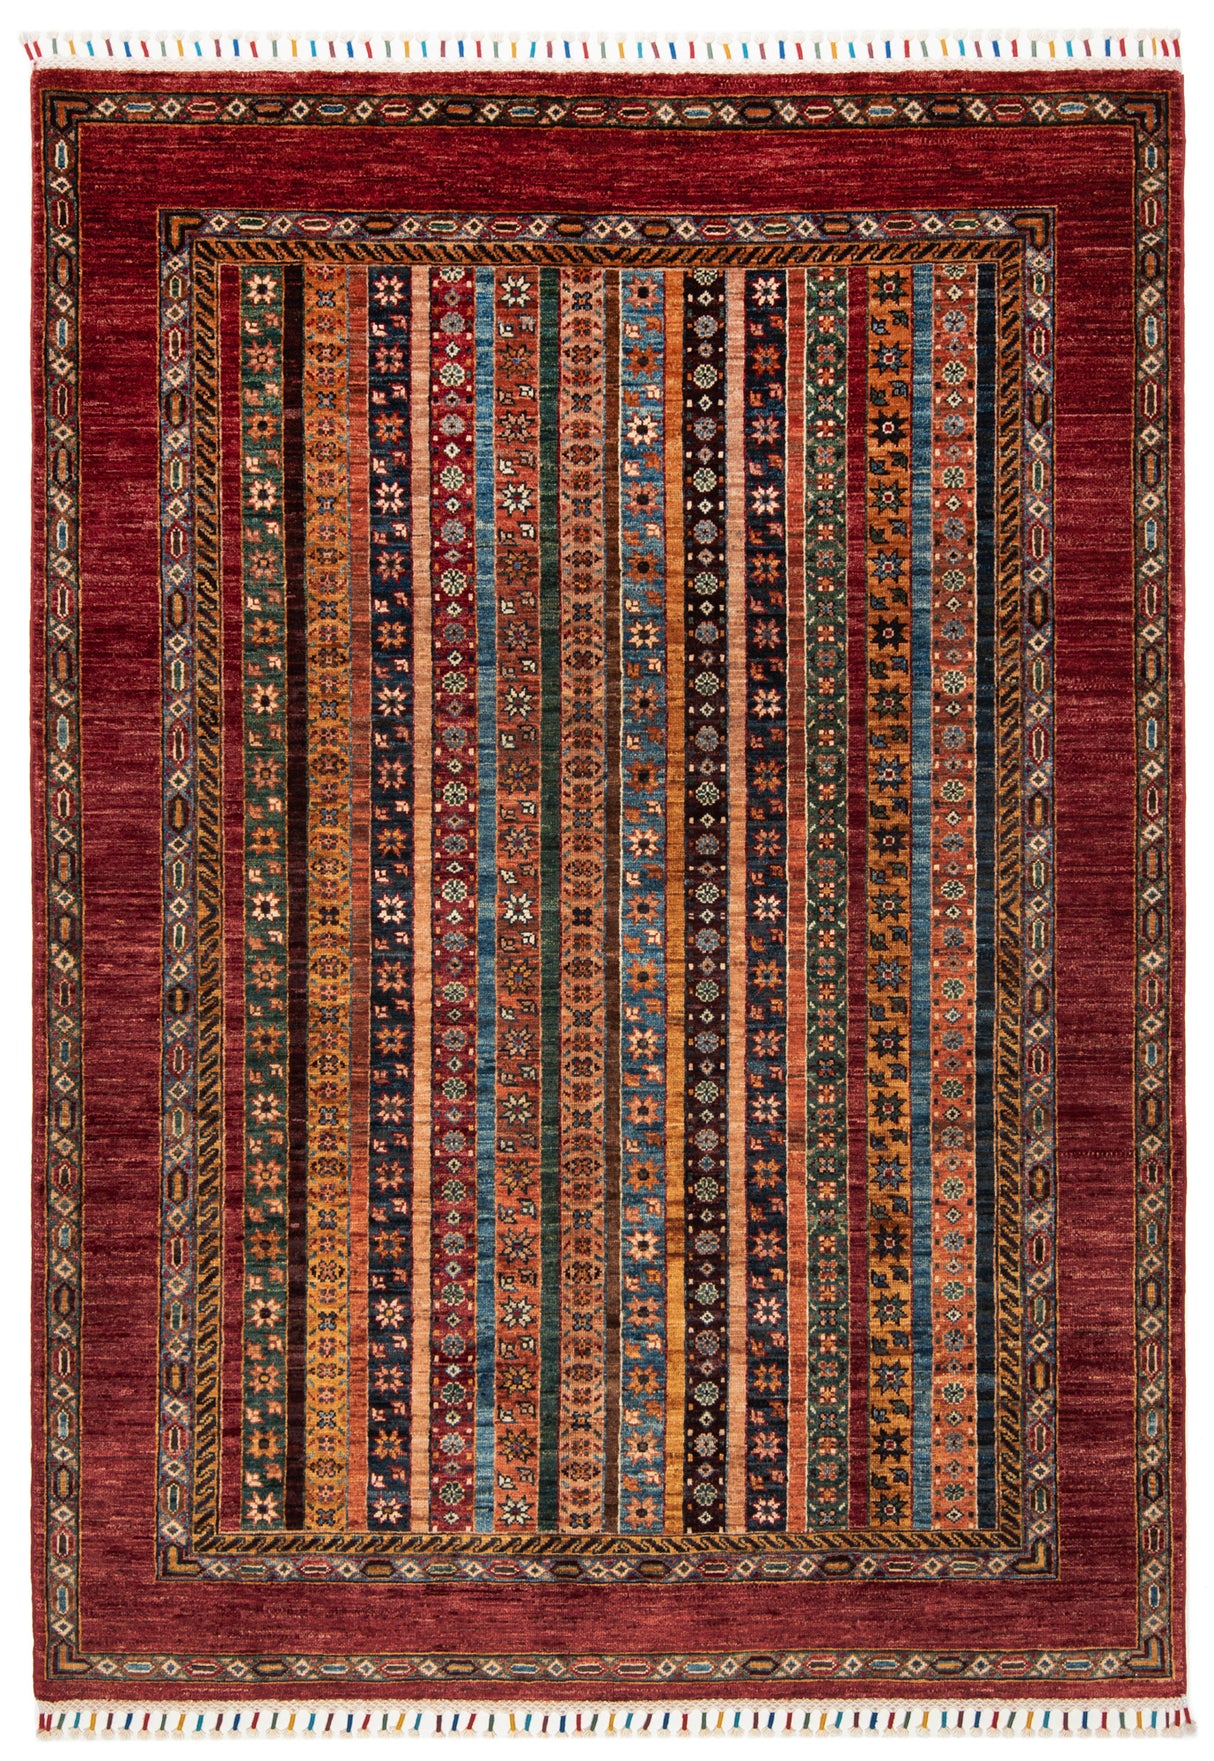 Ziegler Ariana Carpet | 214 x 152 cm